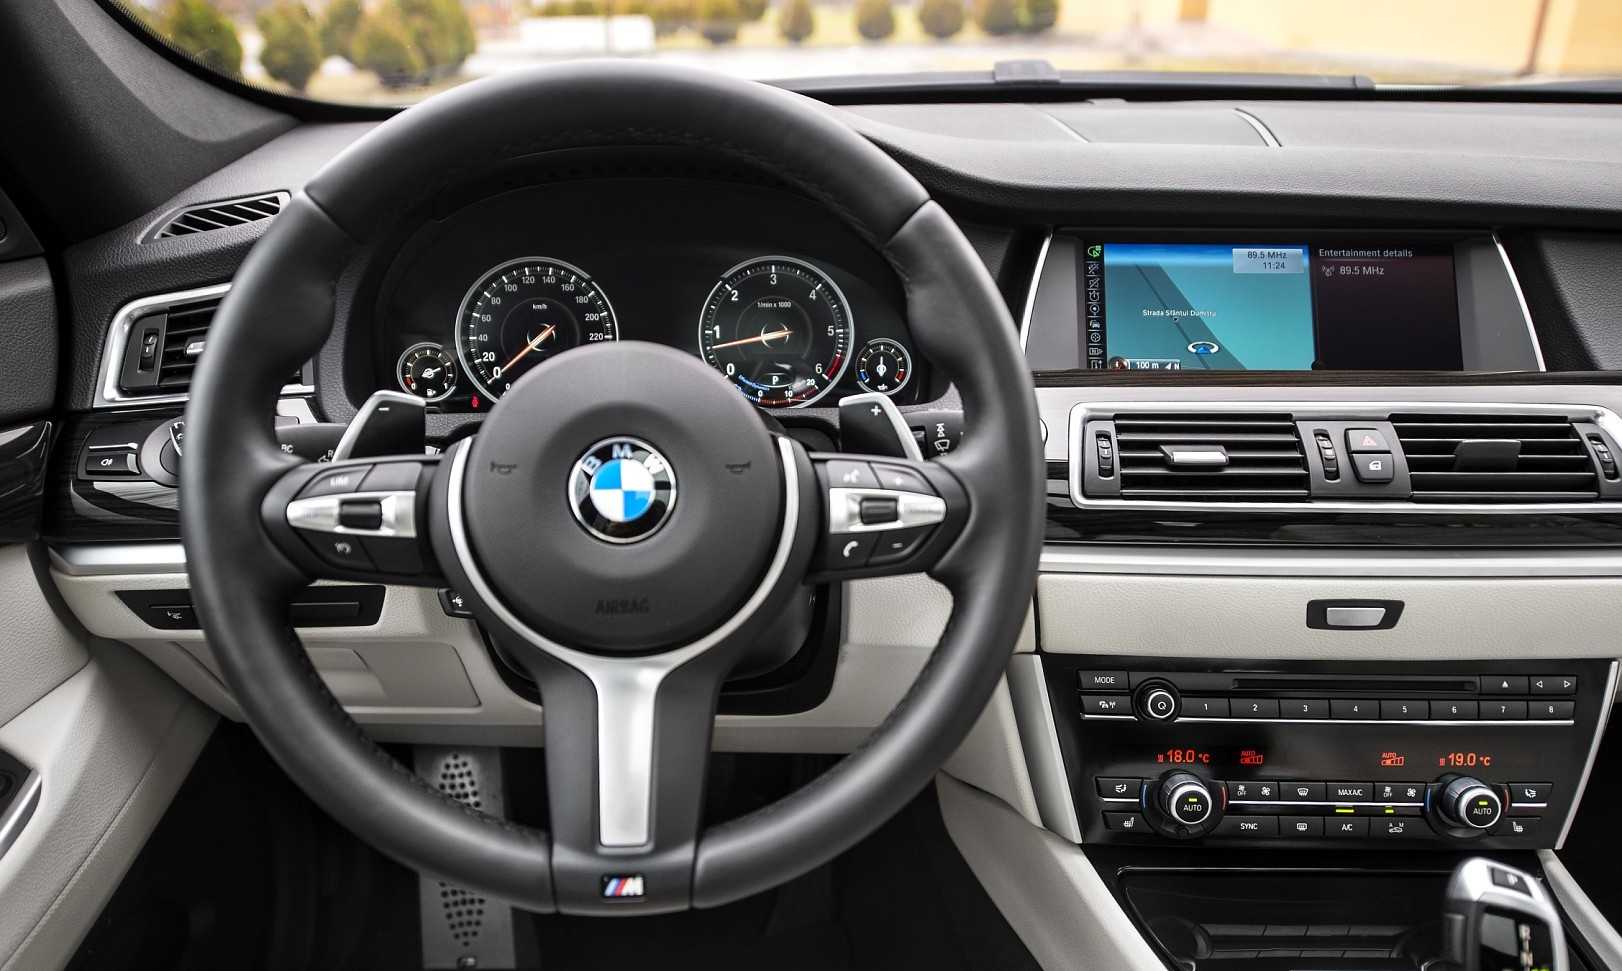 Автомобили BMW 5-series Gran Turismo 2010-2013: Описание, обзоры, характеристики, фото, тесты BMW 5-series Gran Turismo 2010-2013, опыт эксплуатации и отзывы владельцев BMW 5-series Gran Turismo в автокаталоге CarExpertru